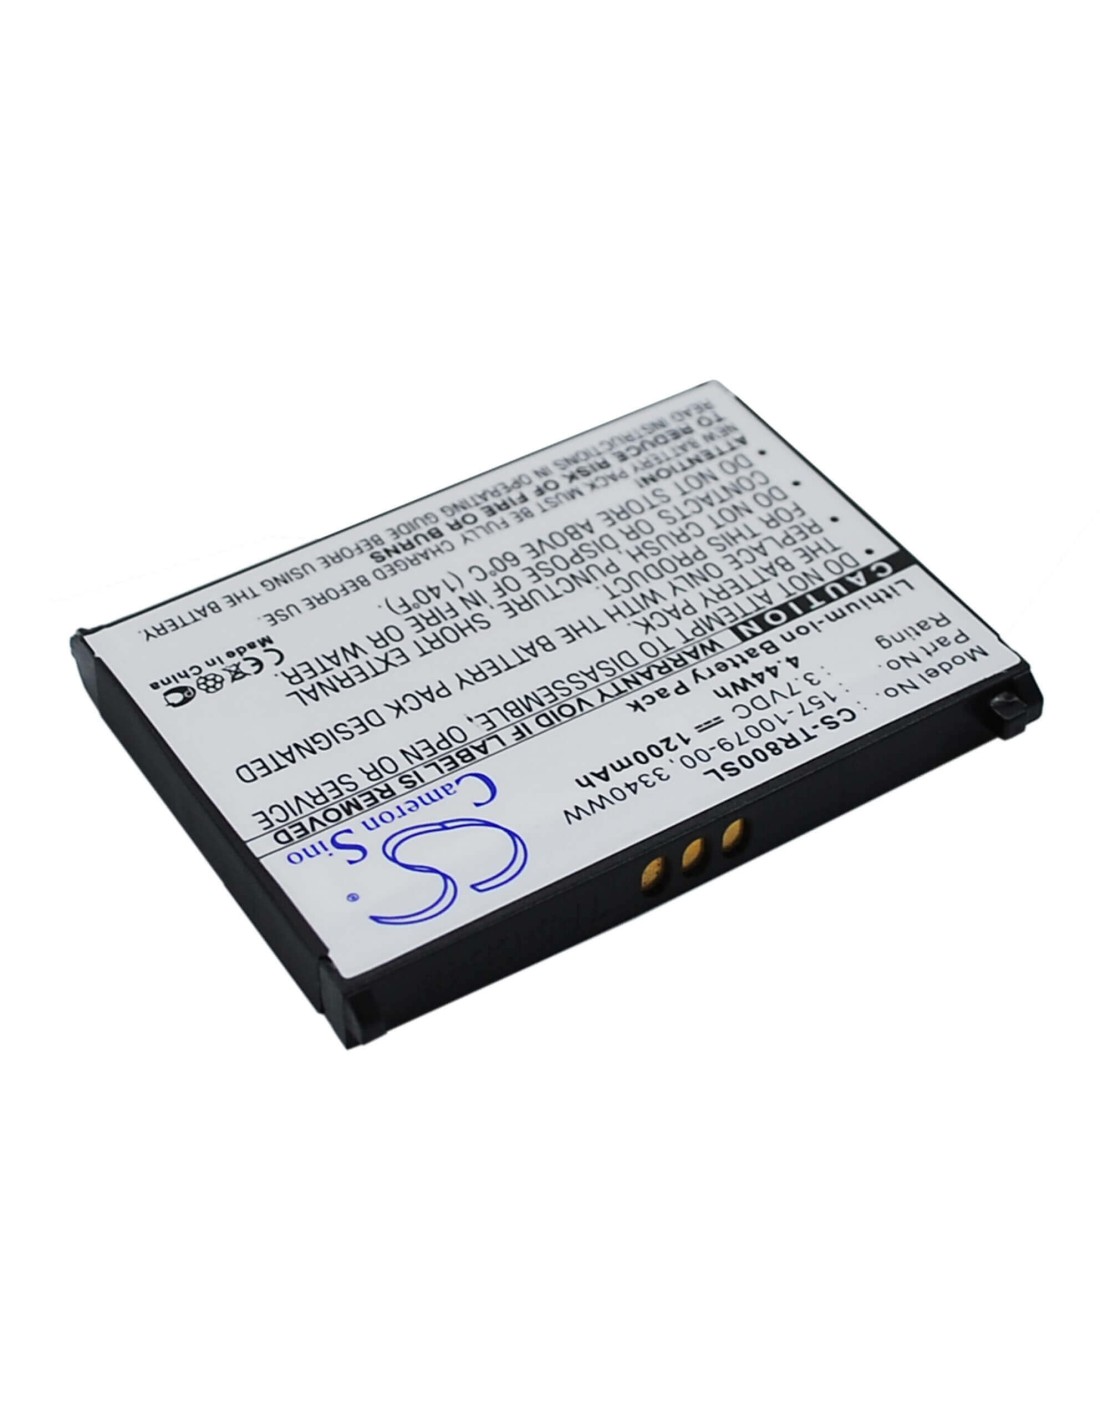 Battery for Palm Treo 800, Treo 800p, Treo 800w 3.7V, 1200mAh - 4.44Wh